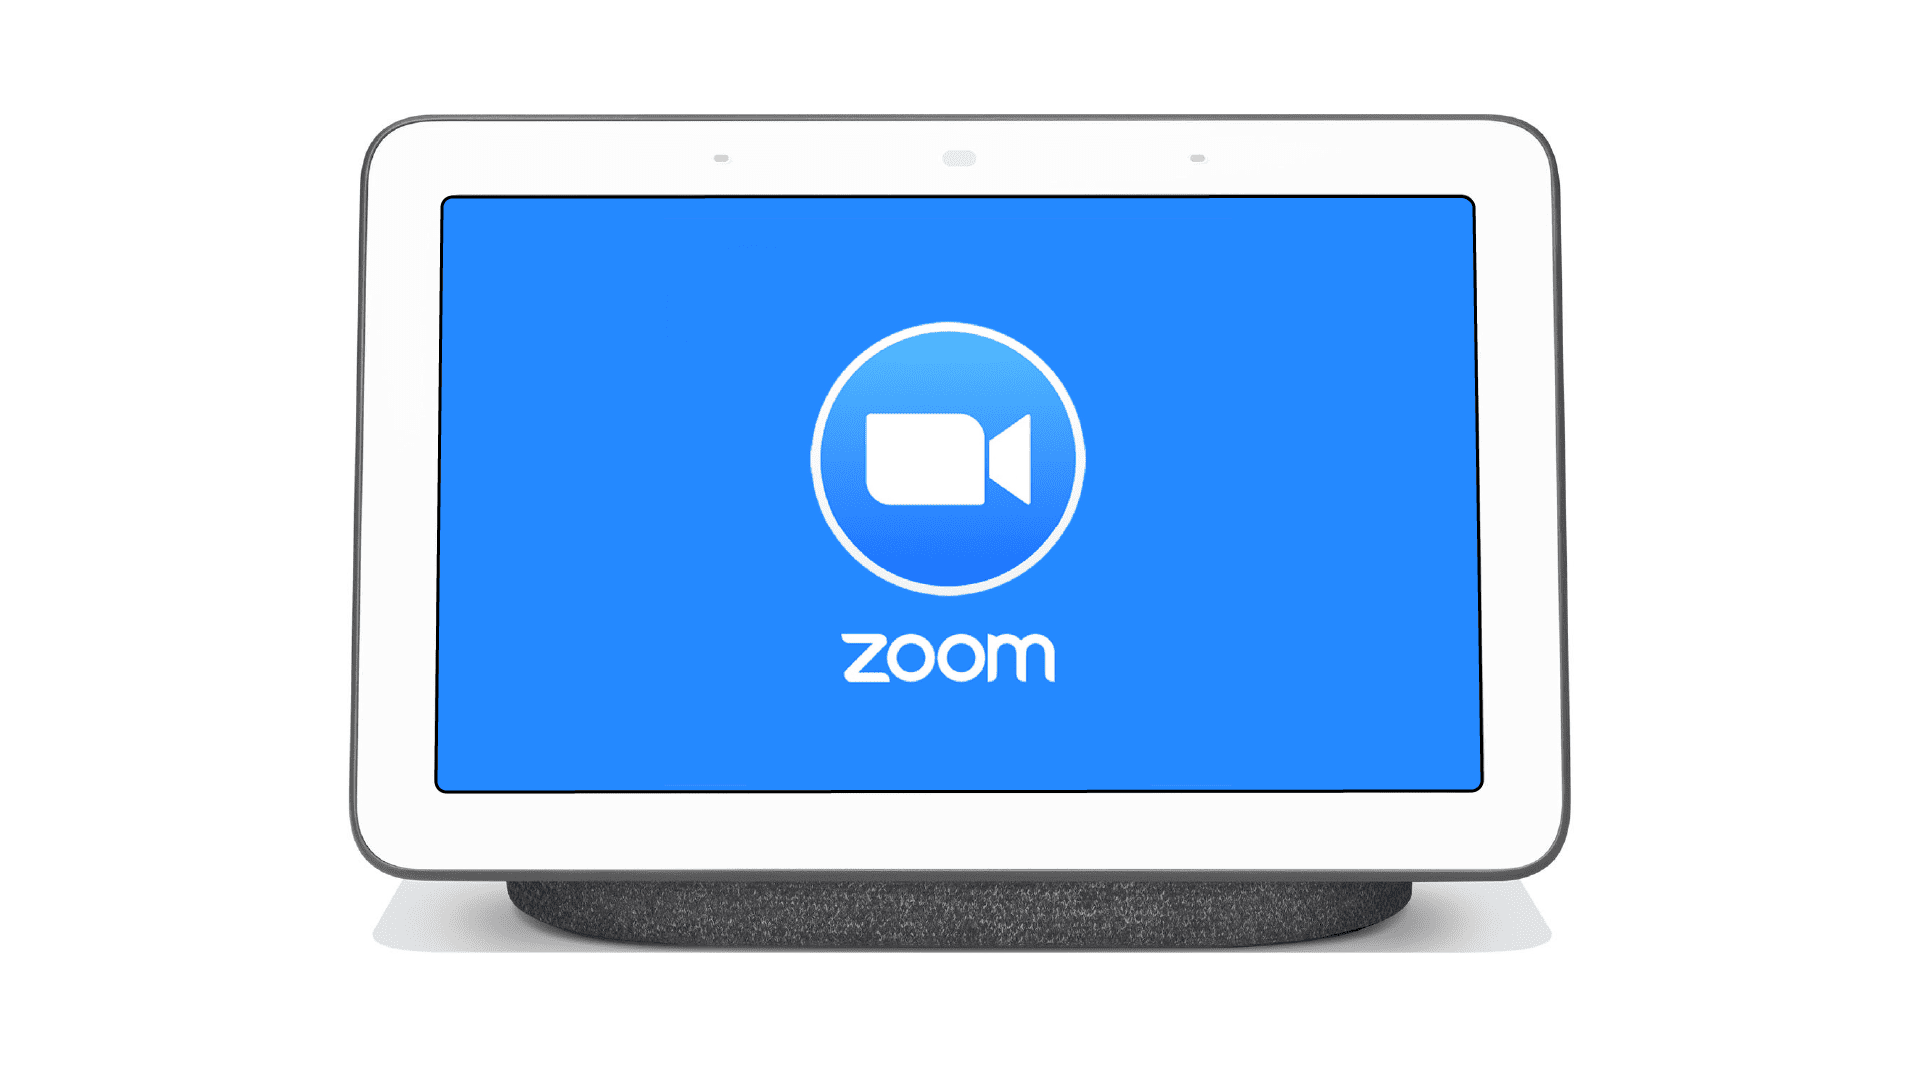 Zoom kommt zu Smart Displays von Amazon, Facebook, und Google später in diesem Jahr 363